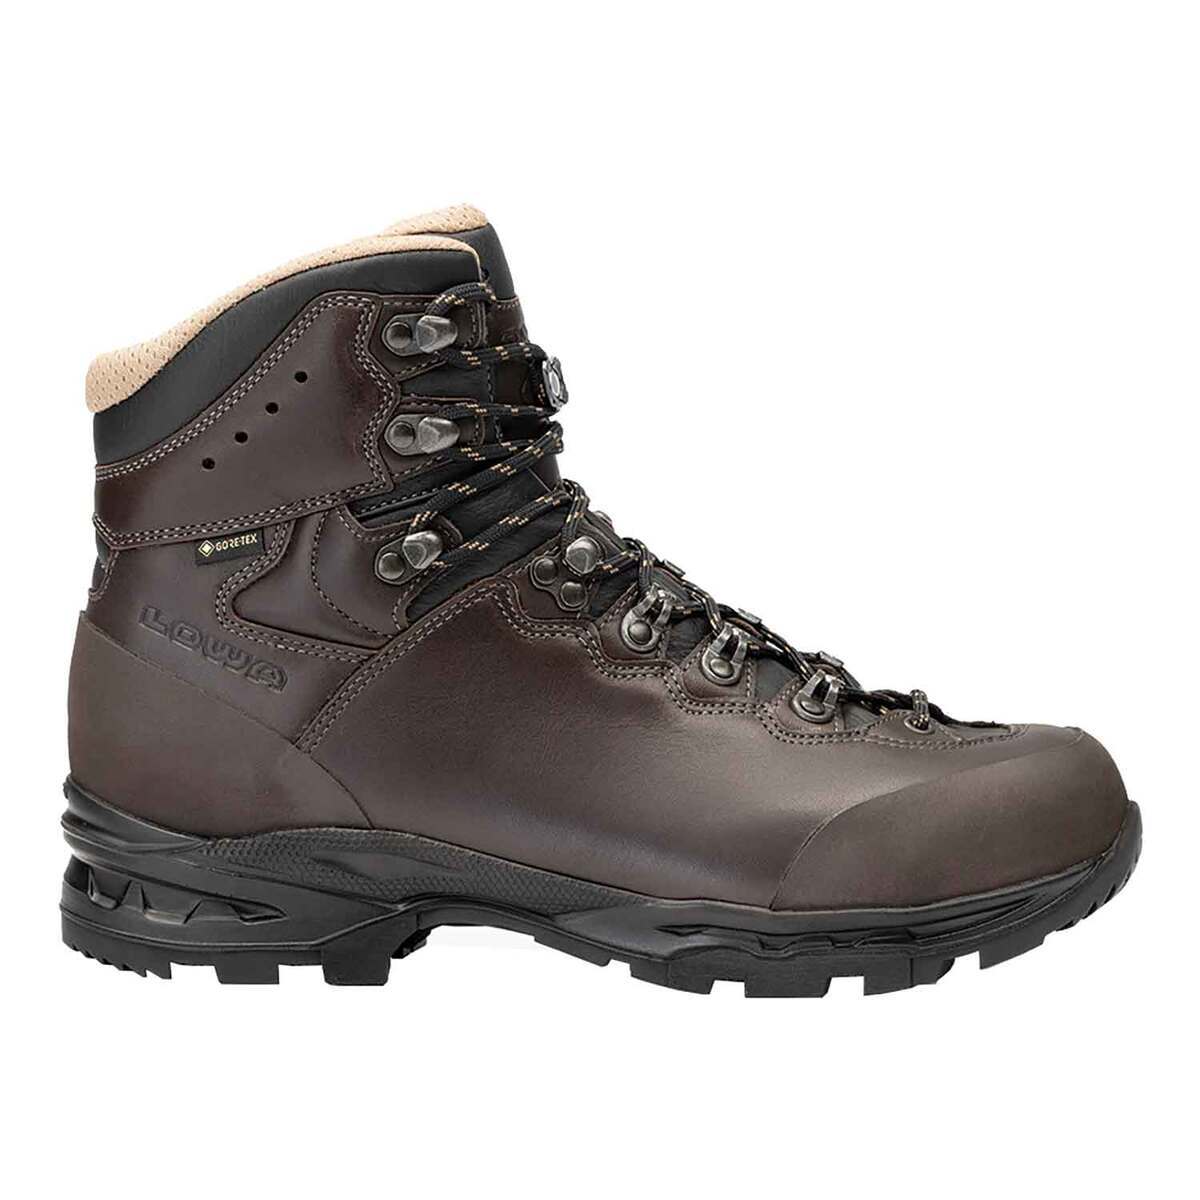 Lowa Men's Camino Evo FG Gore-Tex Waterproof Hiking Boots - Dark Brown ...